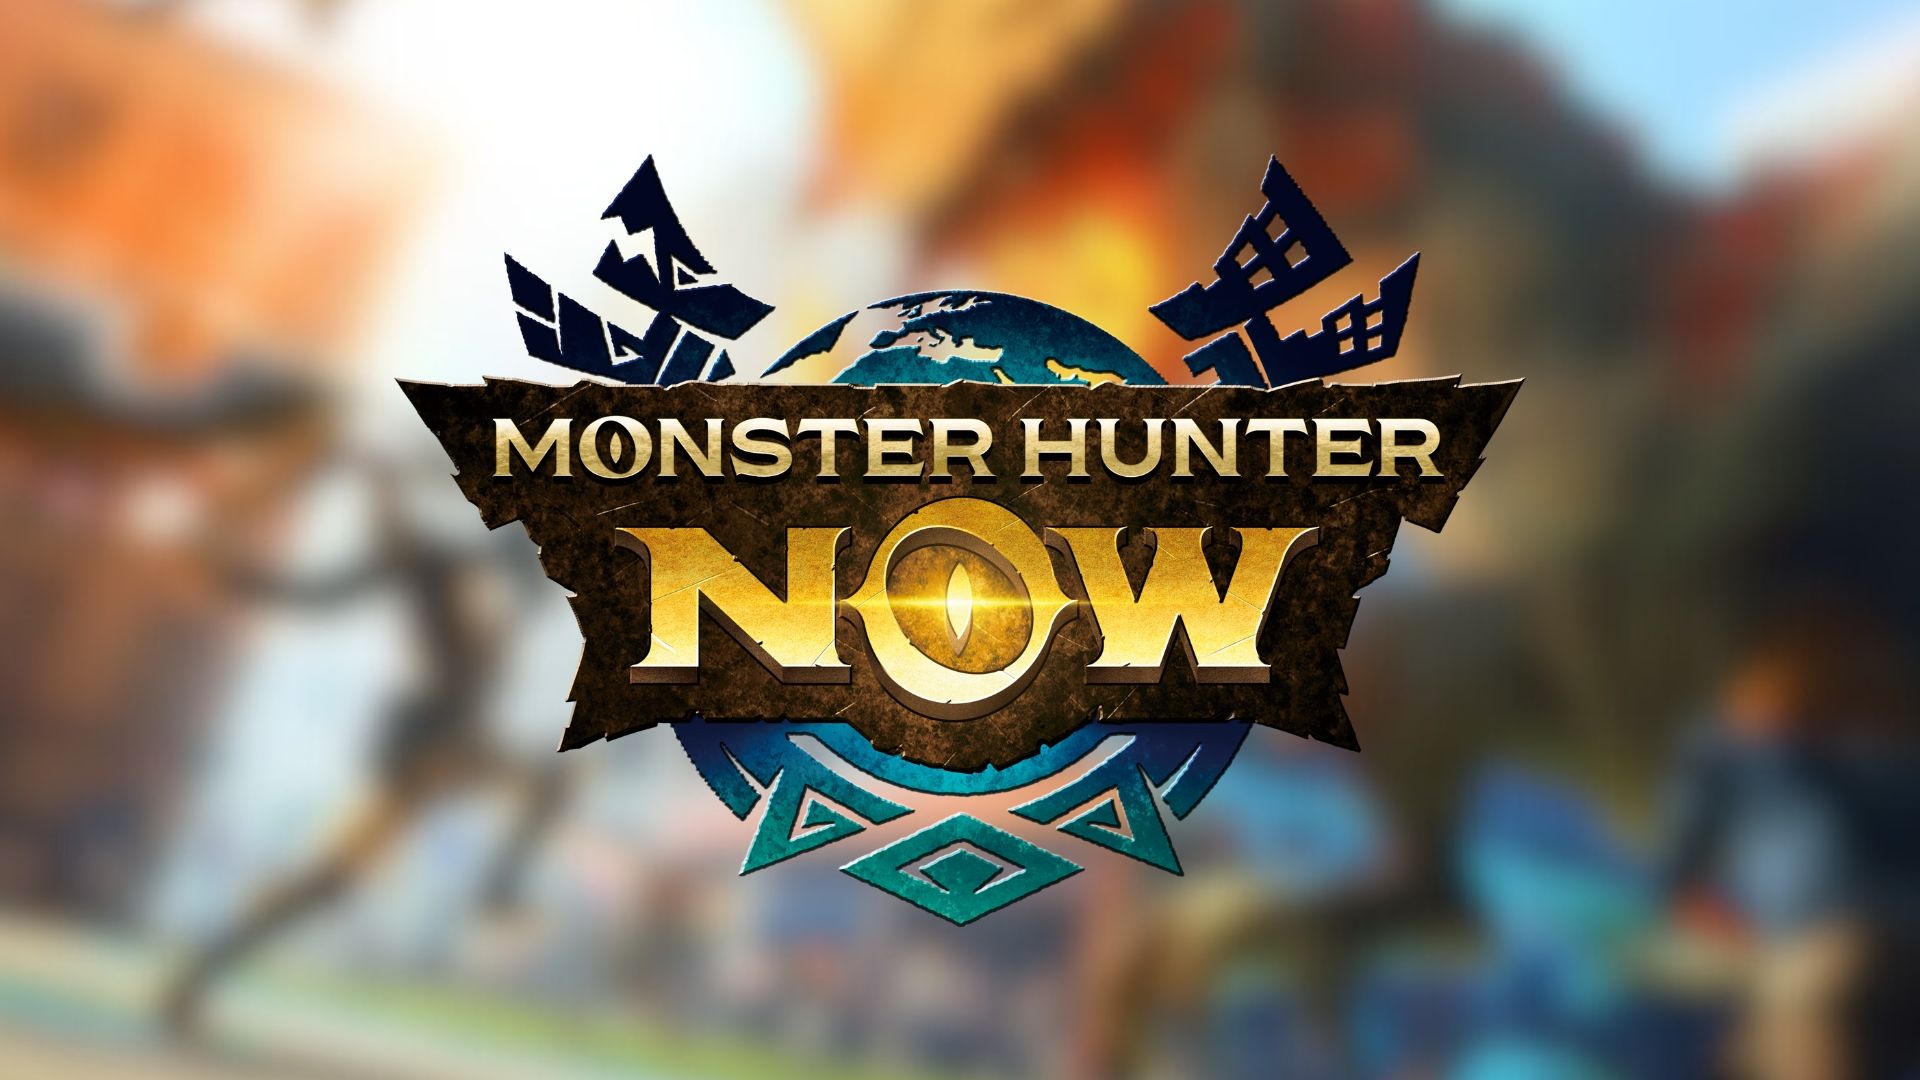 “Una introducción simplista al mundo de Monster Hunter” – Revisión de Monster Hunter Now